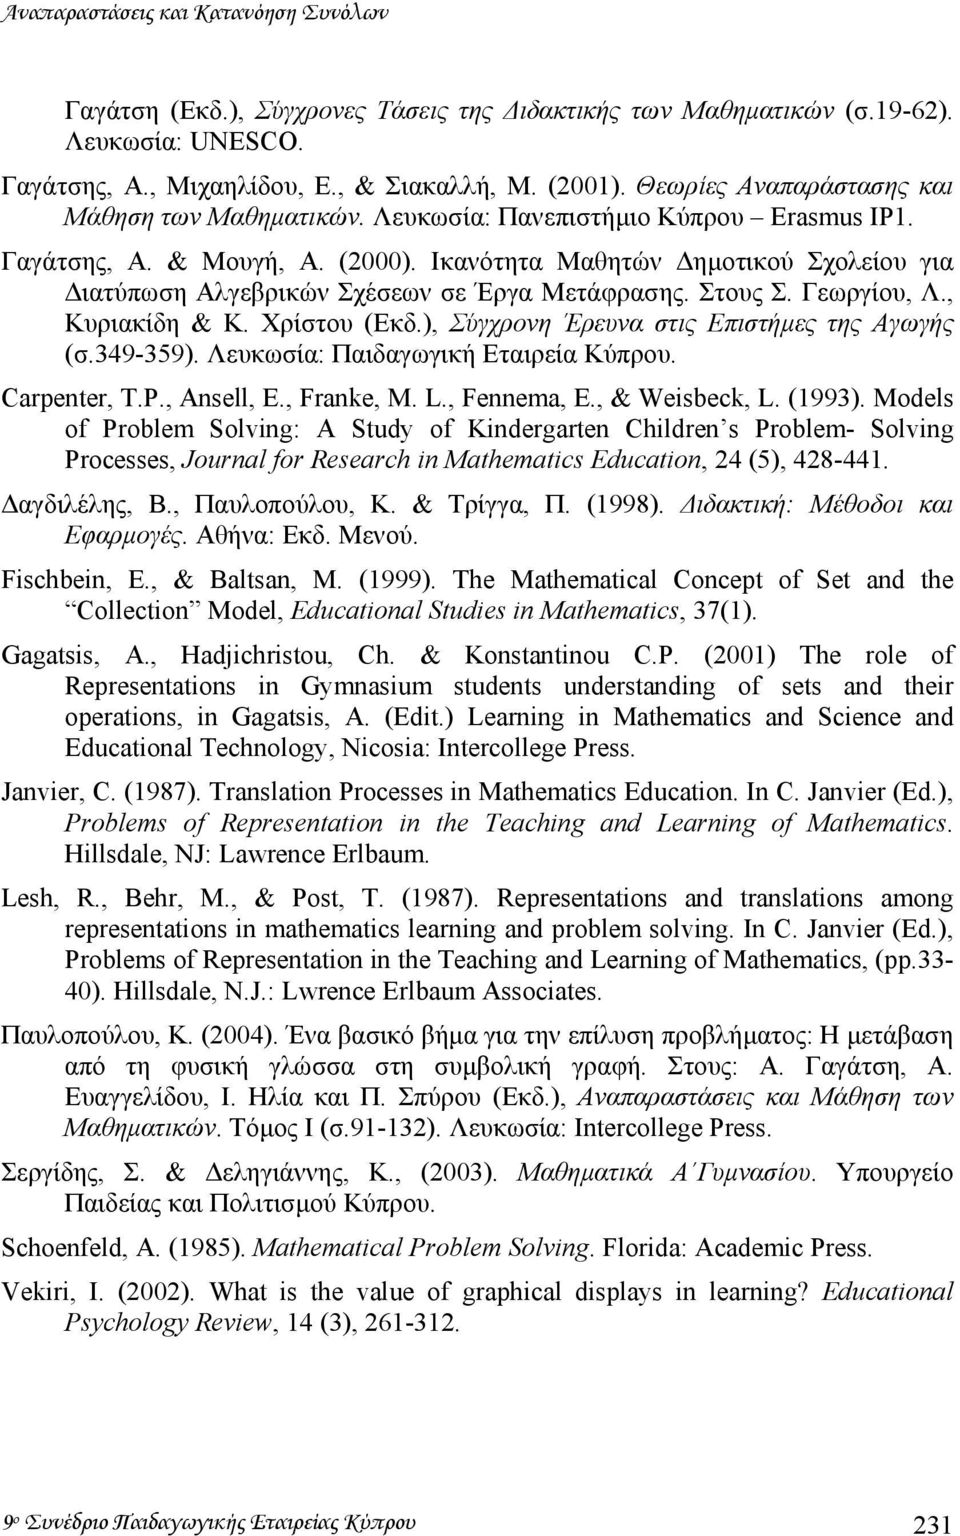 Ικανότητα Μαθητών ηµοτικού Σχολείου για ιατύπωση Αλγεβρικών Σχέσεων σε Έργα Μετάφρασης. Στους Σ. Γεωργίου, Λ., Κυριακίδη & Κ. Χρίστου (Εκδ.), Σύγχρονη Έρευνα στις Επιστήµες της Αγωγής (σ.349-359).